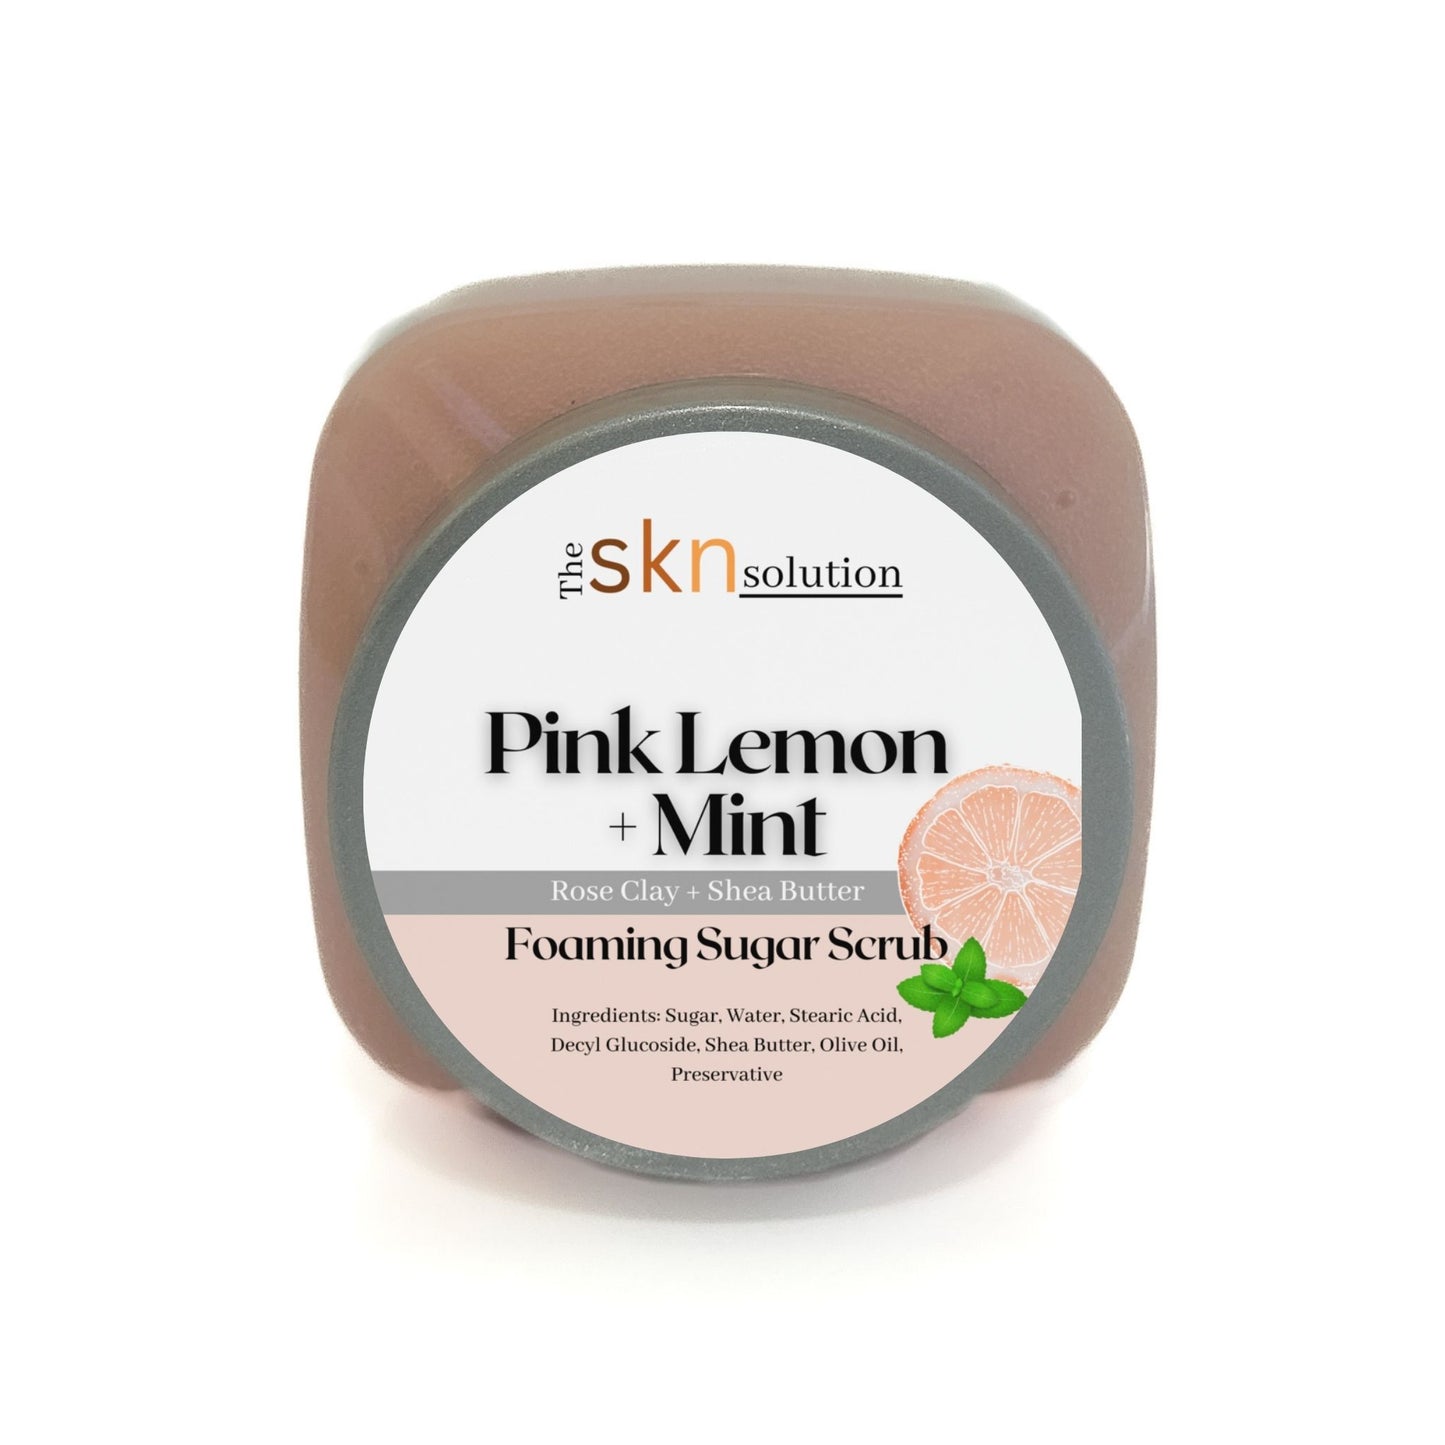 Pink Lemon + Mint